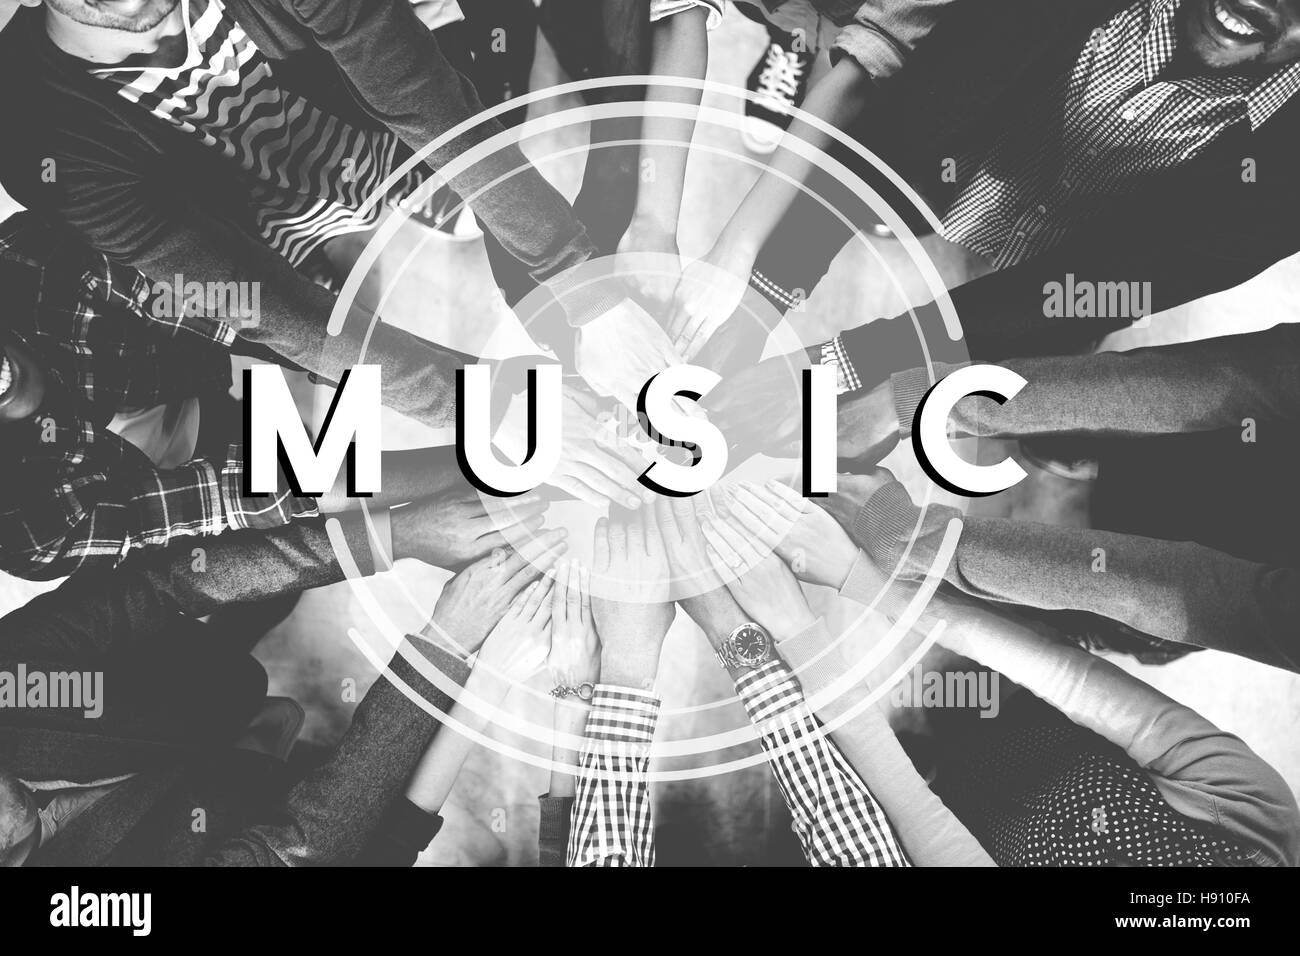 Multimédia Musique Radio Party Concept de vie Banque D'Images